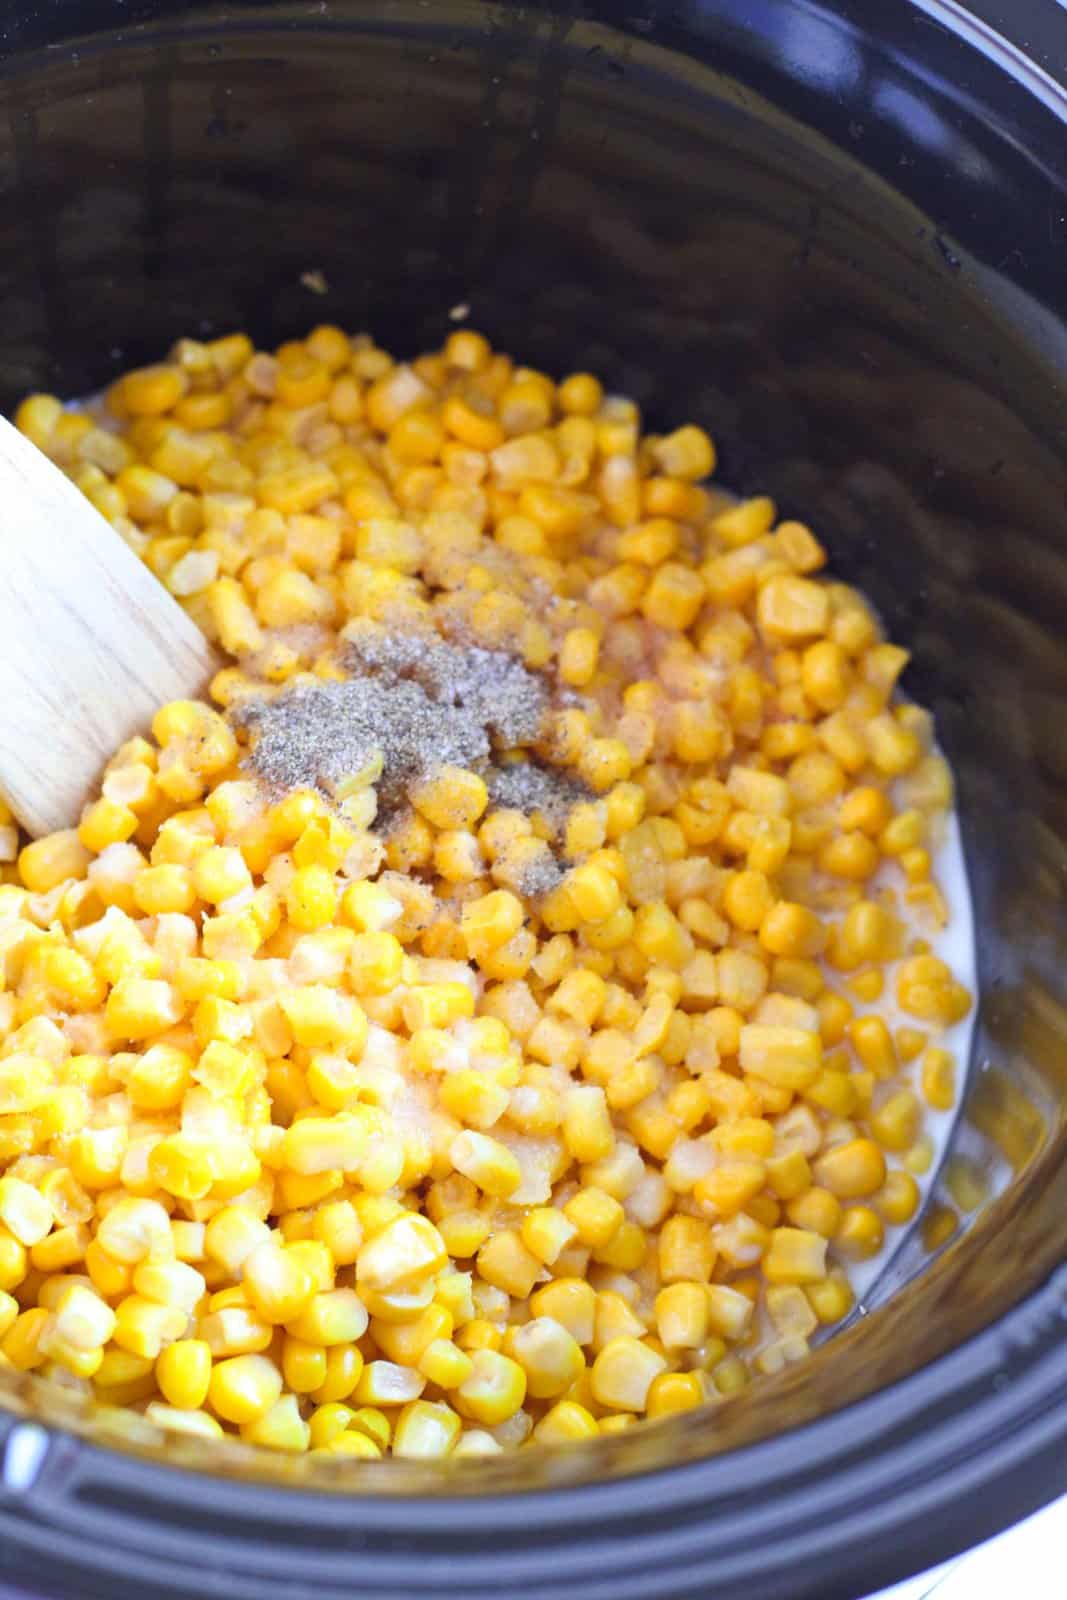 Sugar, salt and pepper added to corn in crock pot.